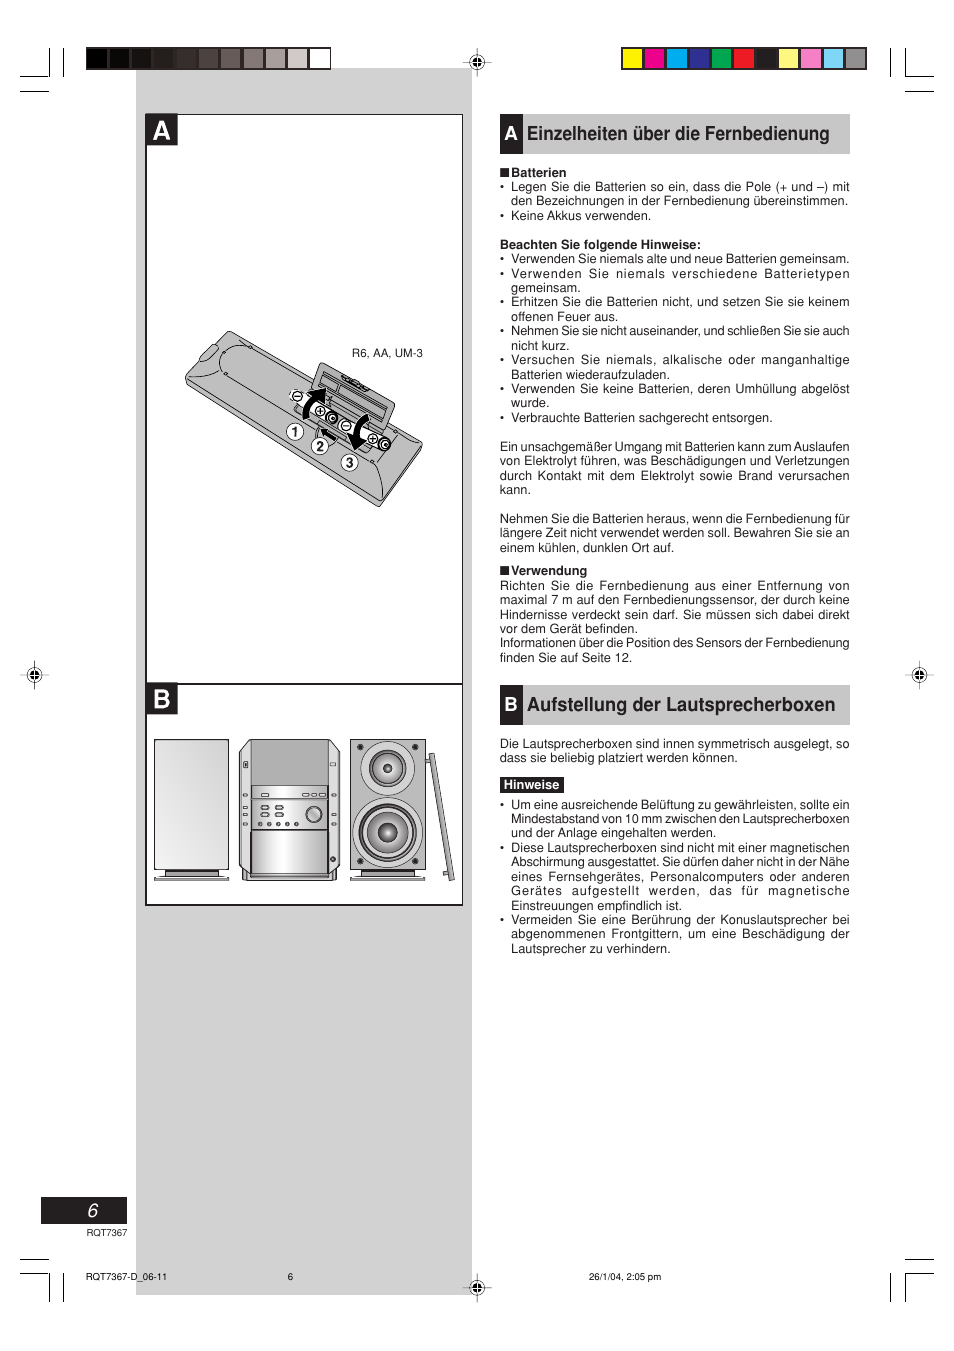 Aeinzelheiten über die fernbedienung, Baufstellung der lautsprecherboxen | Panasonic SCPM19 Benutzerhandbuch | Seite 6 / 56